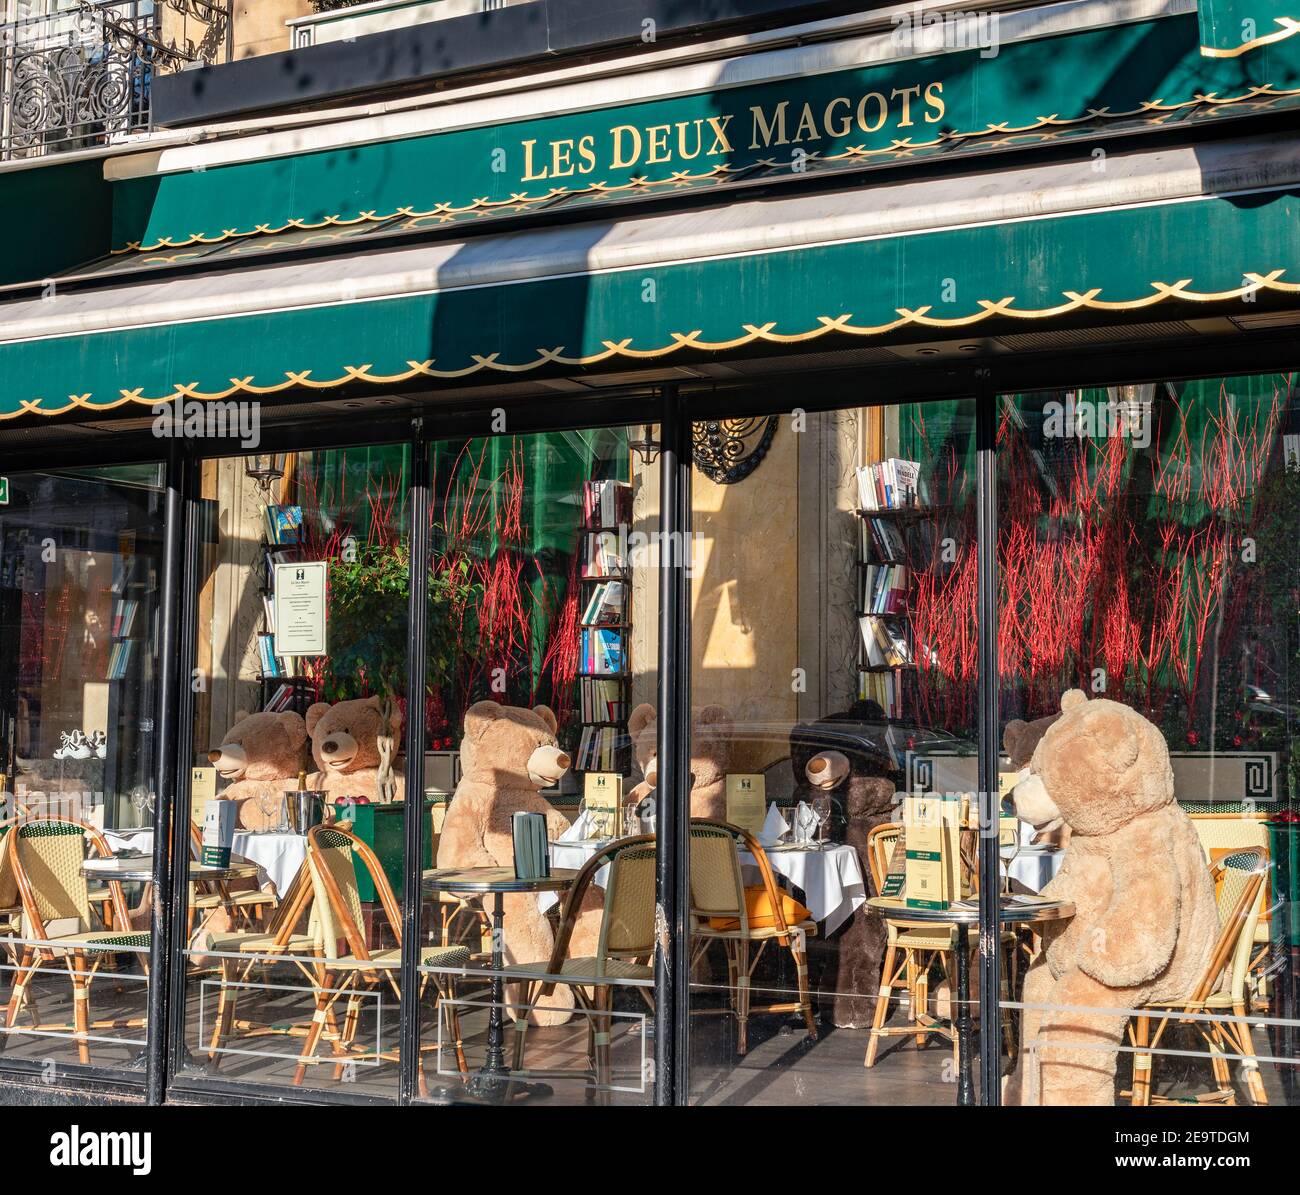 Teddybären im Café Les Deux Magots während der Covid-19 Lockdown in Paris, Frankreich Stockfoto